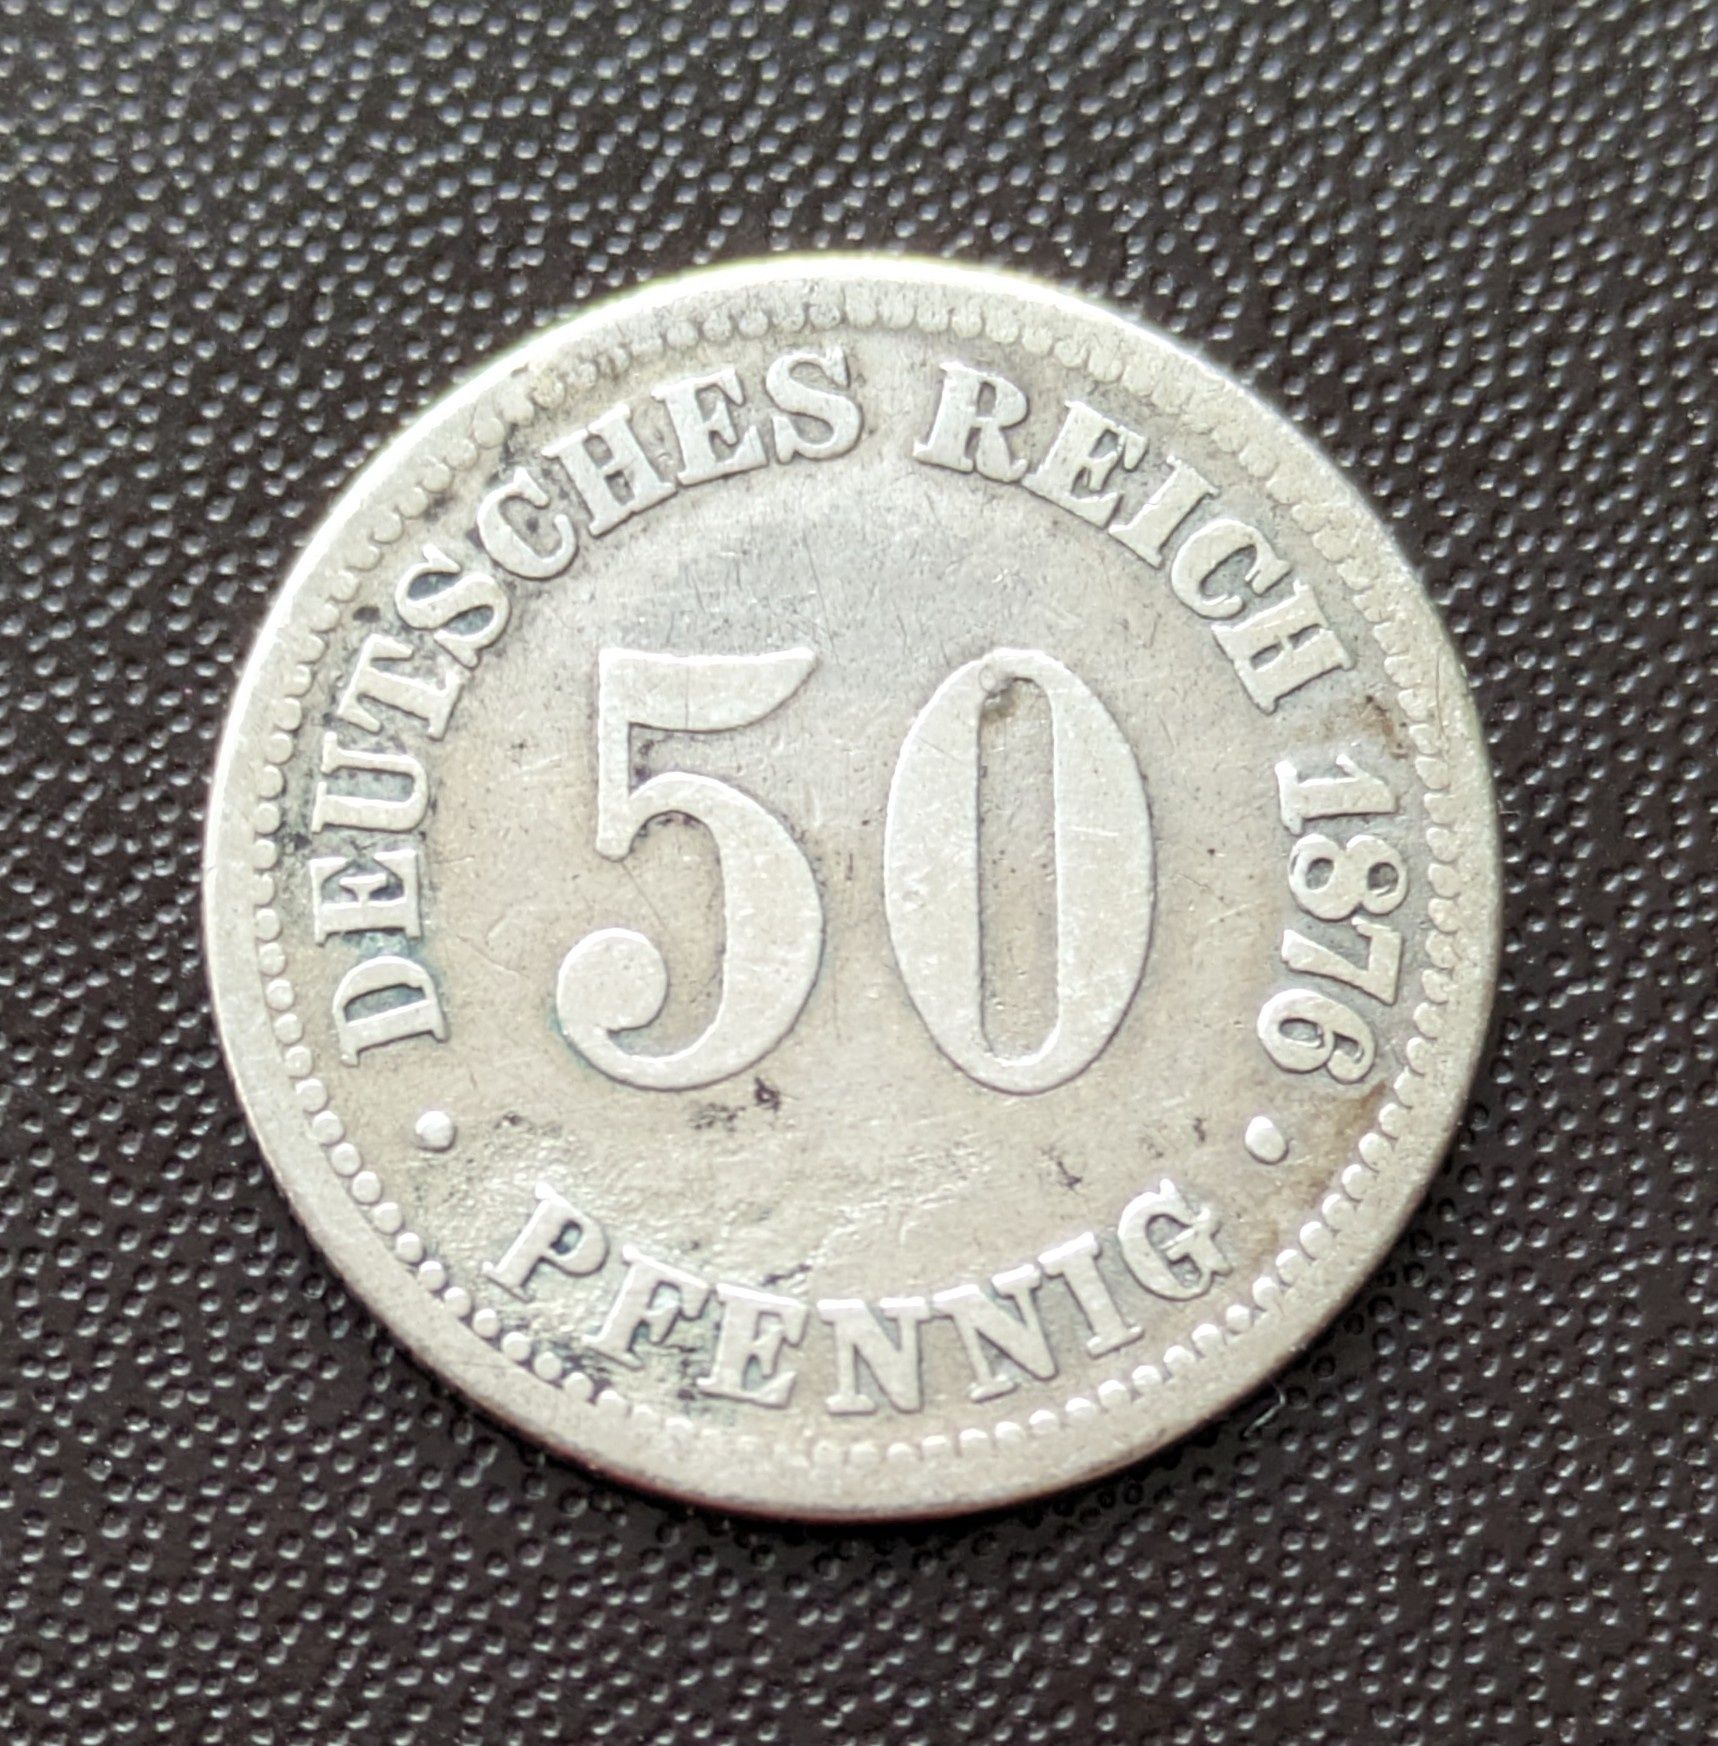 50 пфеннігів 1976 р. Німецька імперія